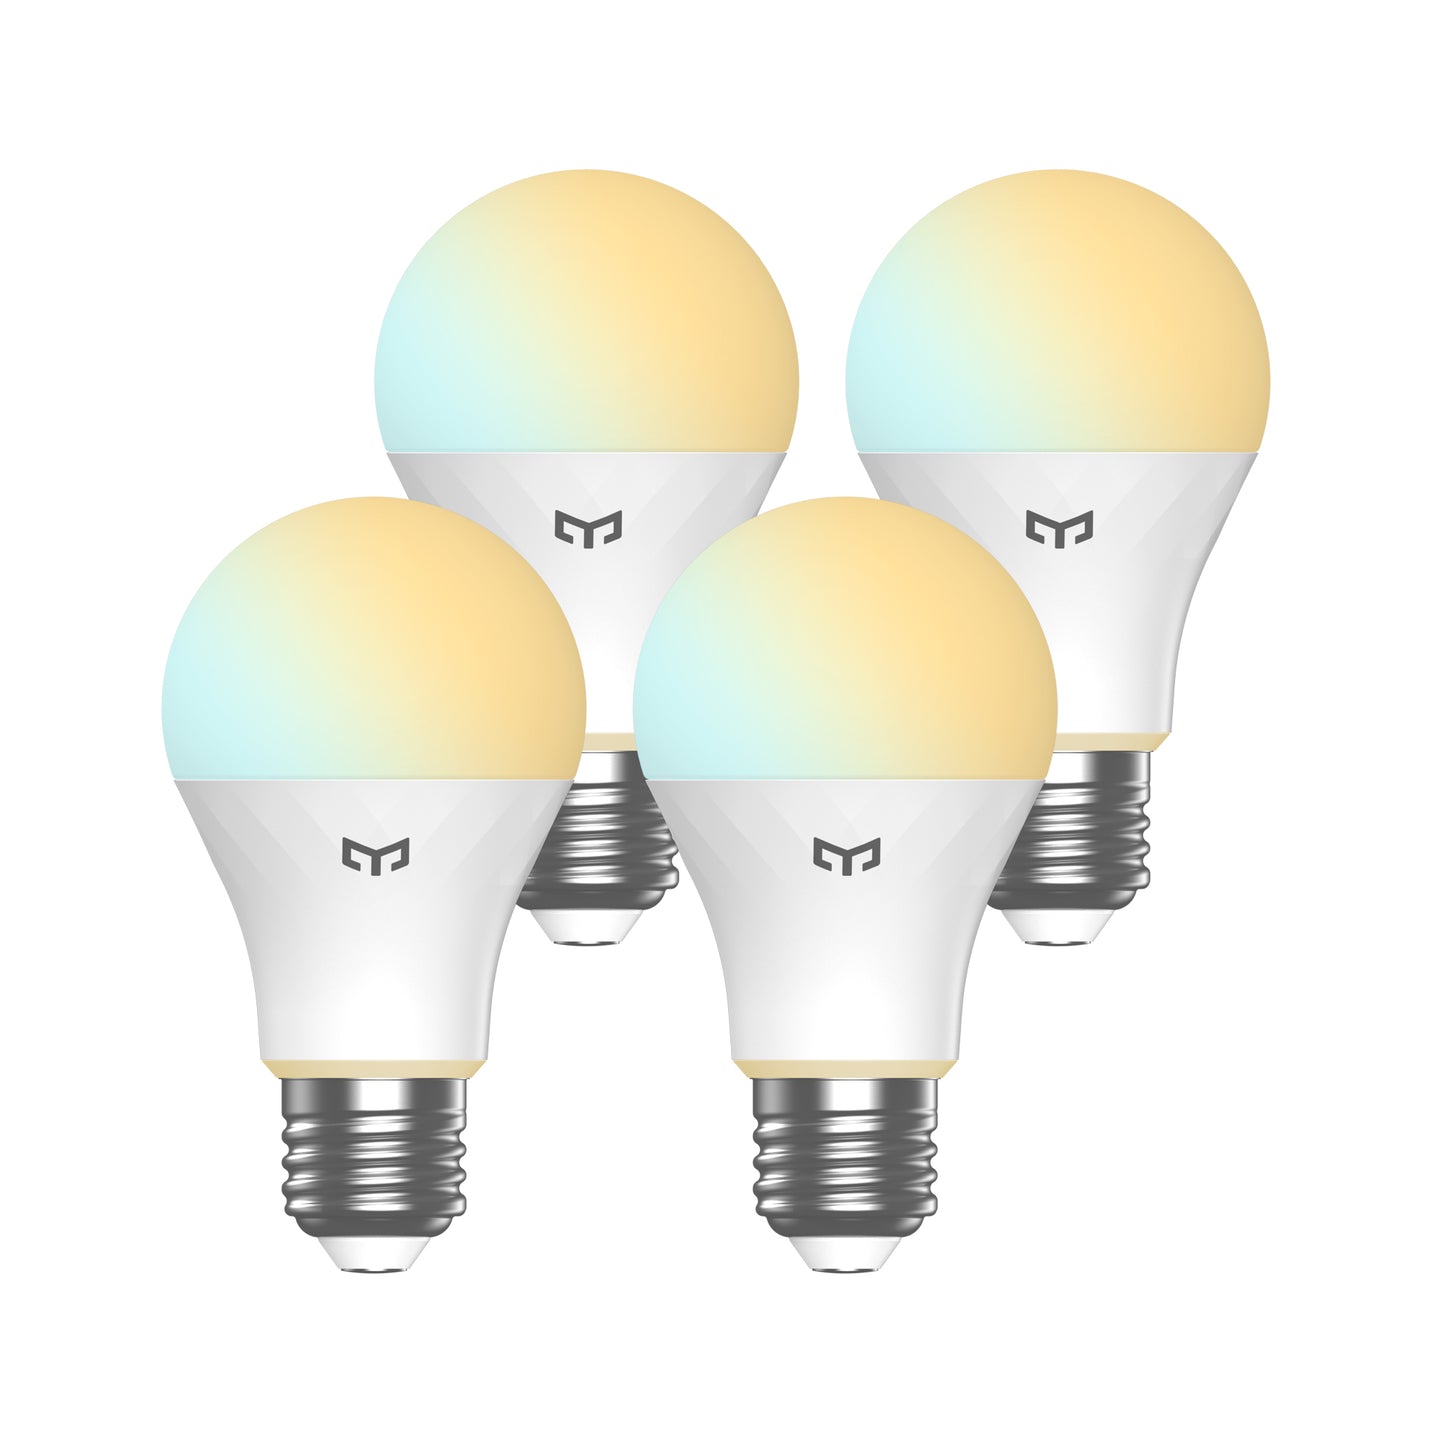 Yeelight Smart Bulb W4 Lite (Tunable White)